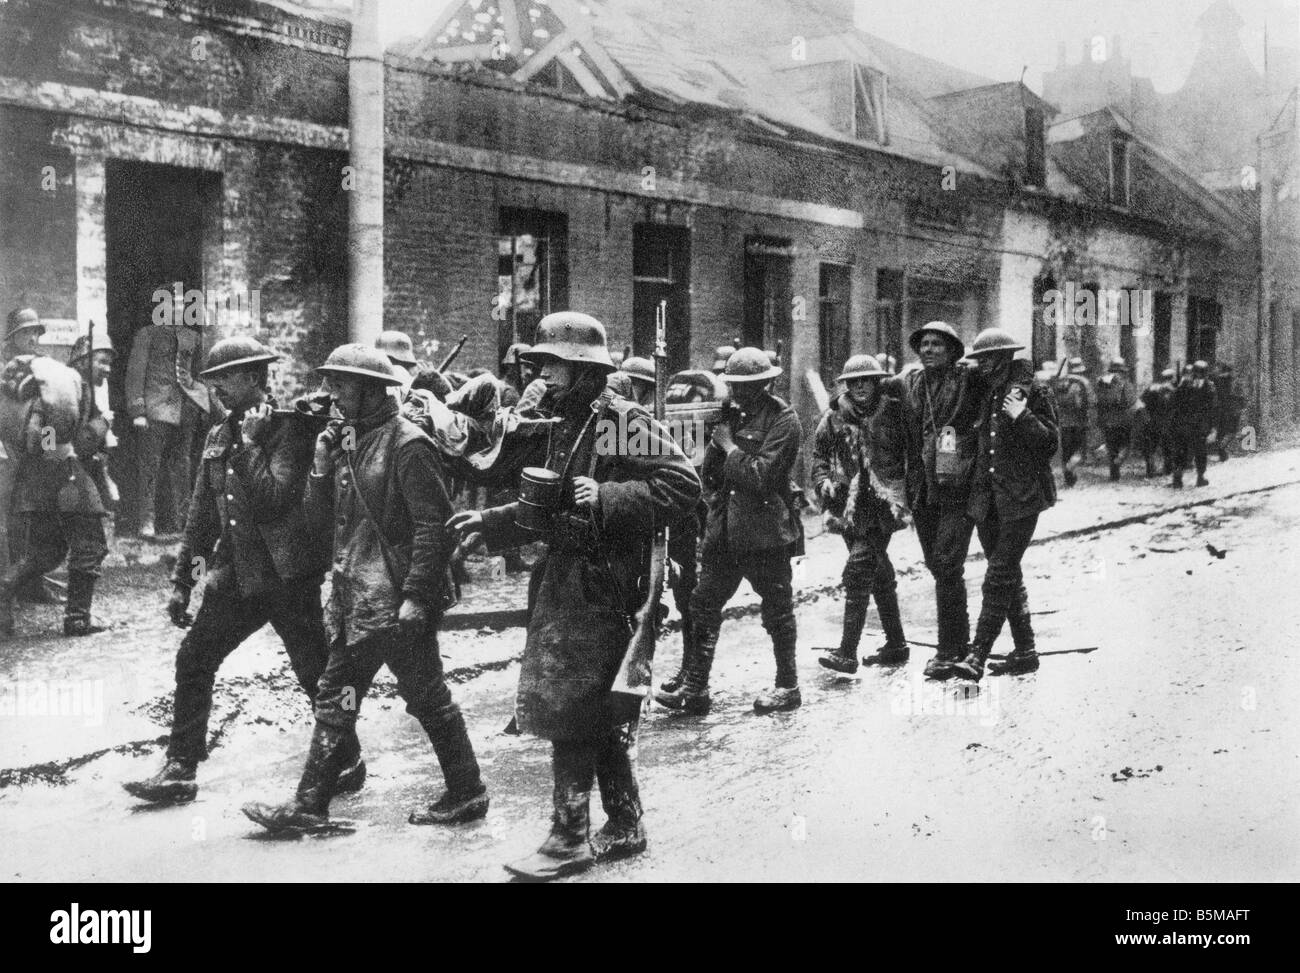 2 G55 W1 1918 29 E hirieron Alemán Inglés soldados 1918 Historia de la I Guerra Mundial frente occidental de la gran batalla en el oeste heridos G Foto de stock